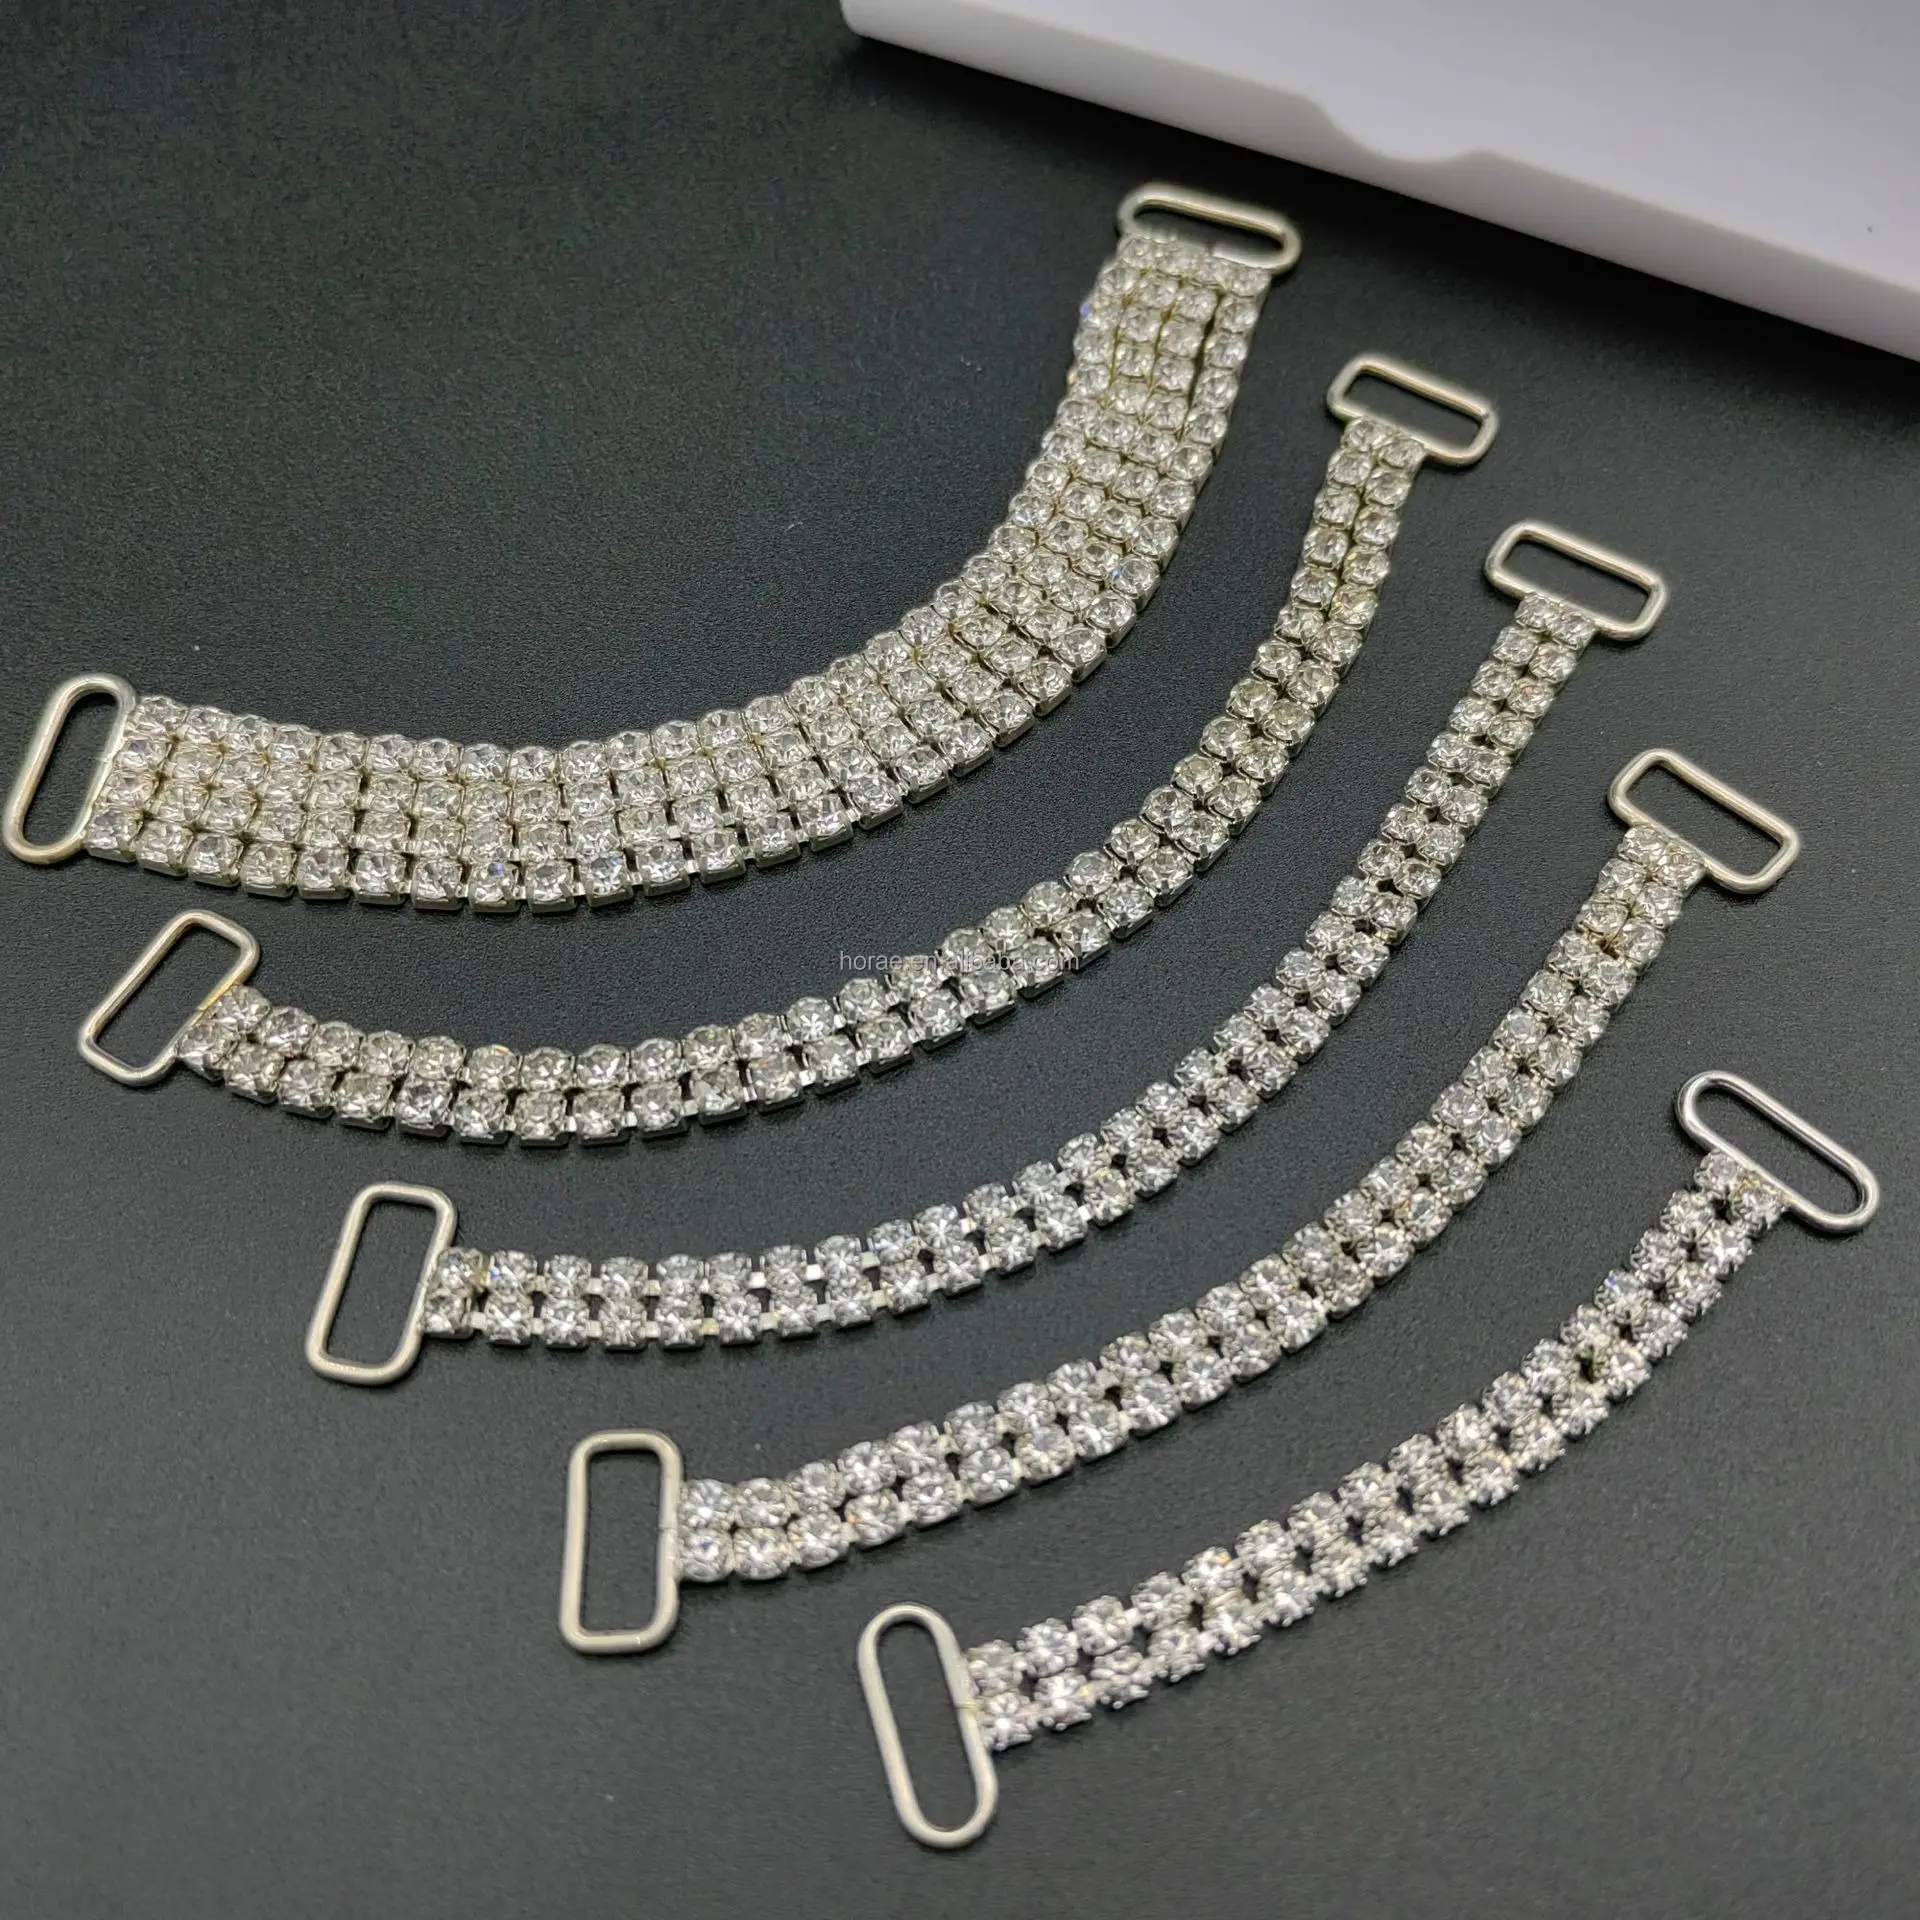 F159 Vente en gros d'appliques de diamants en strass pour connecteurs de maillots de bain Bikini Glitter Crystal Sewing Cup Chain Triming